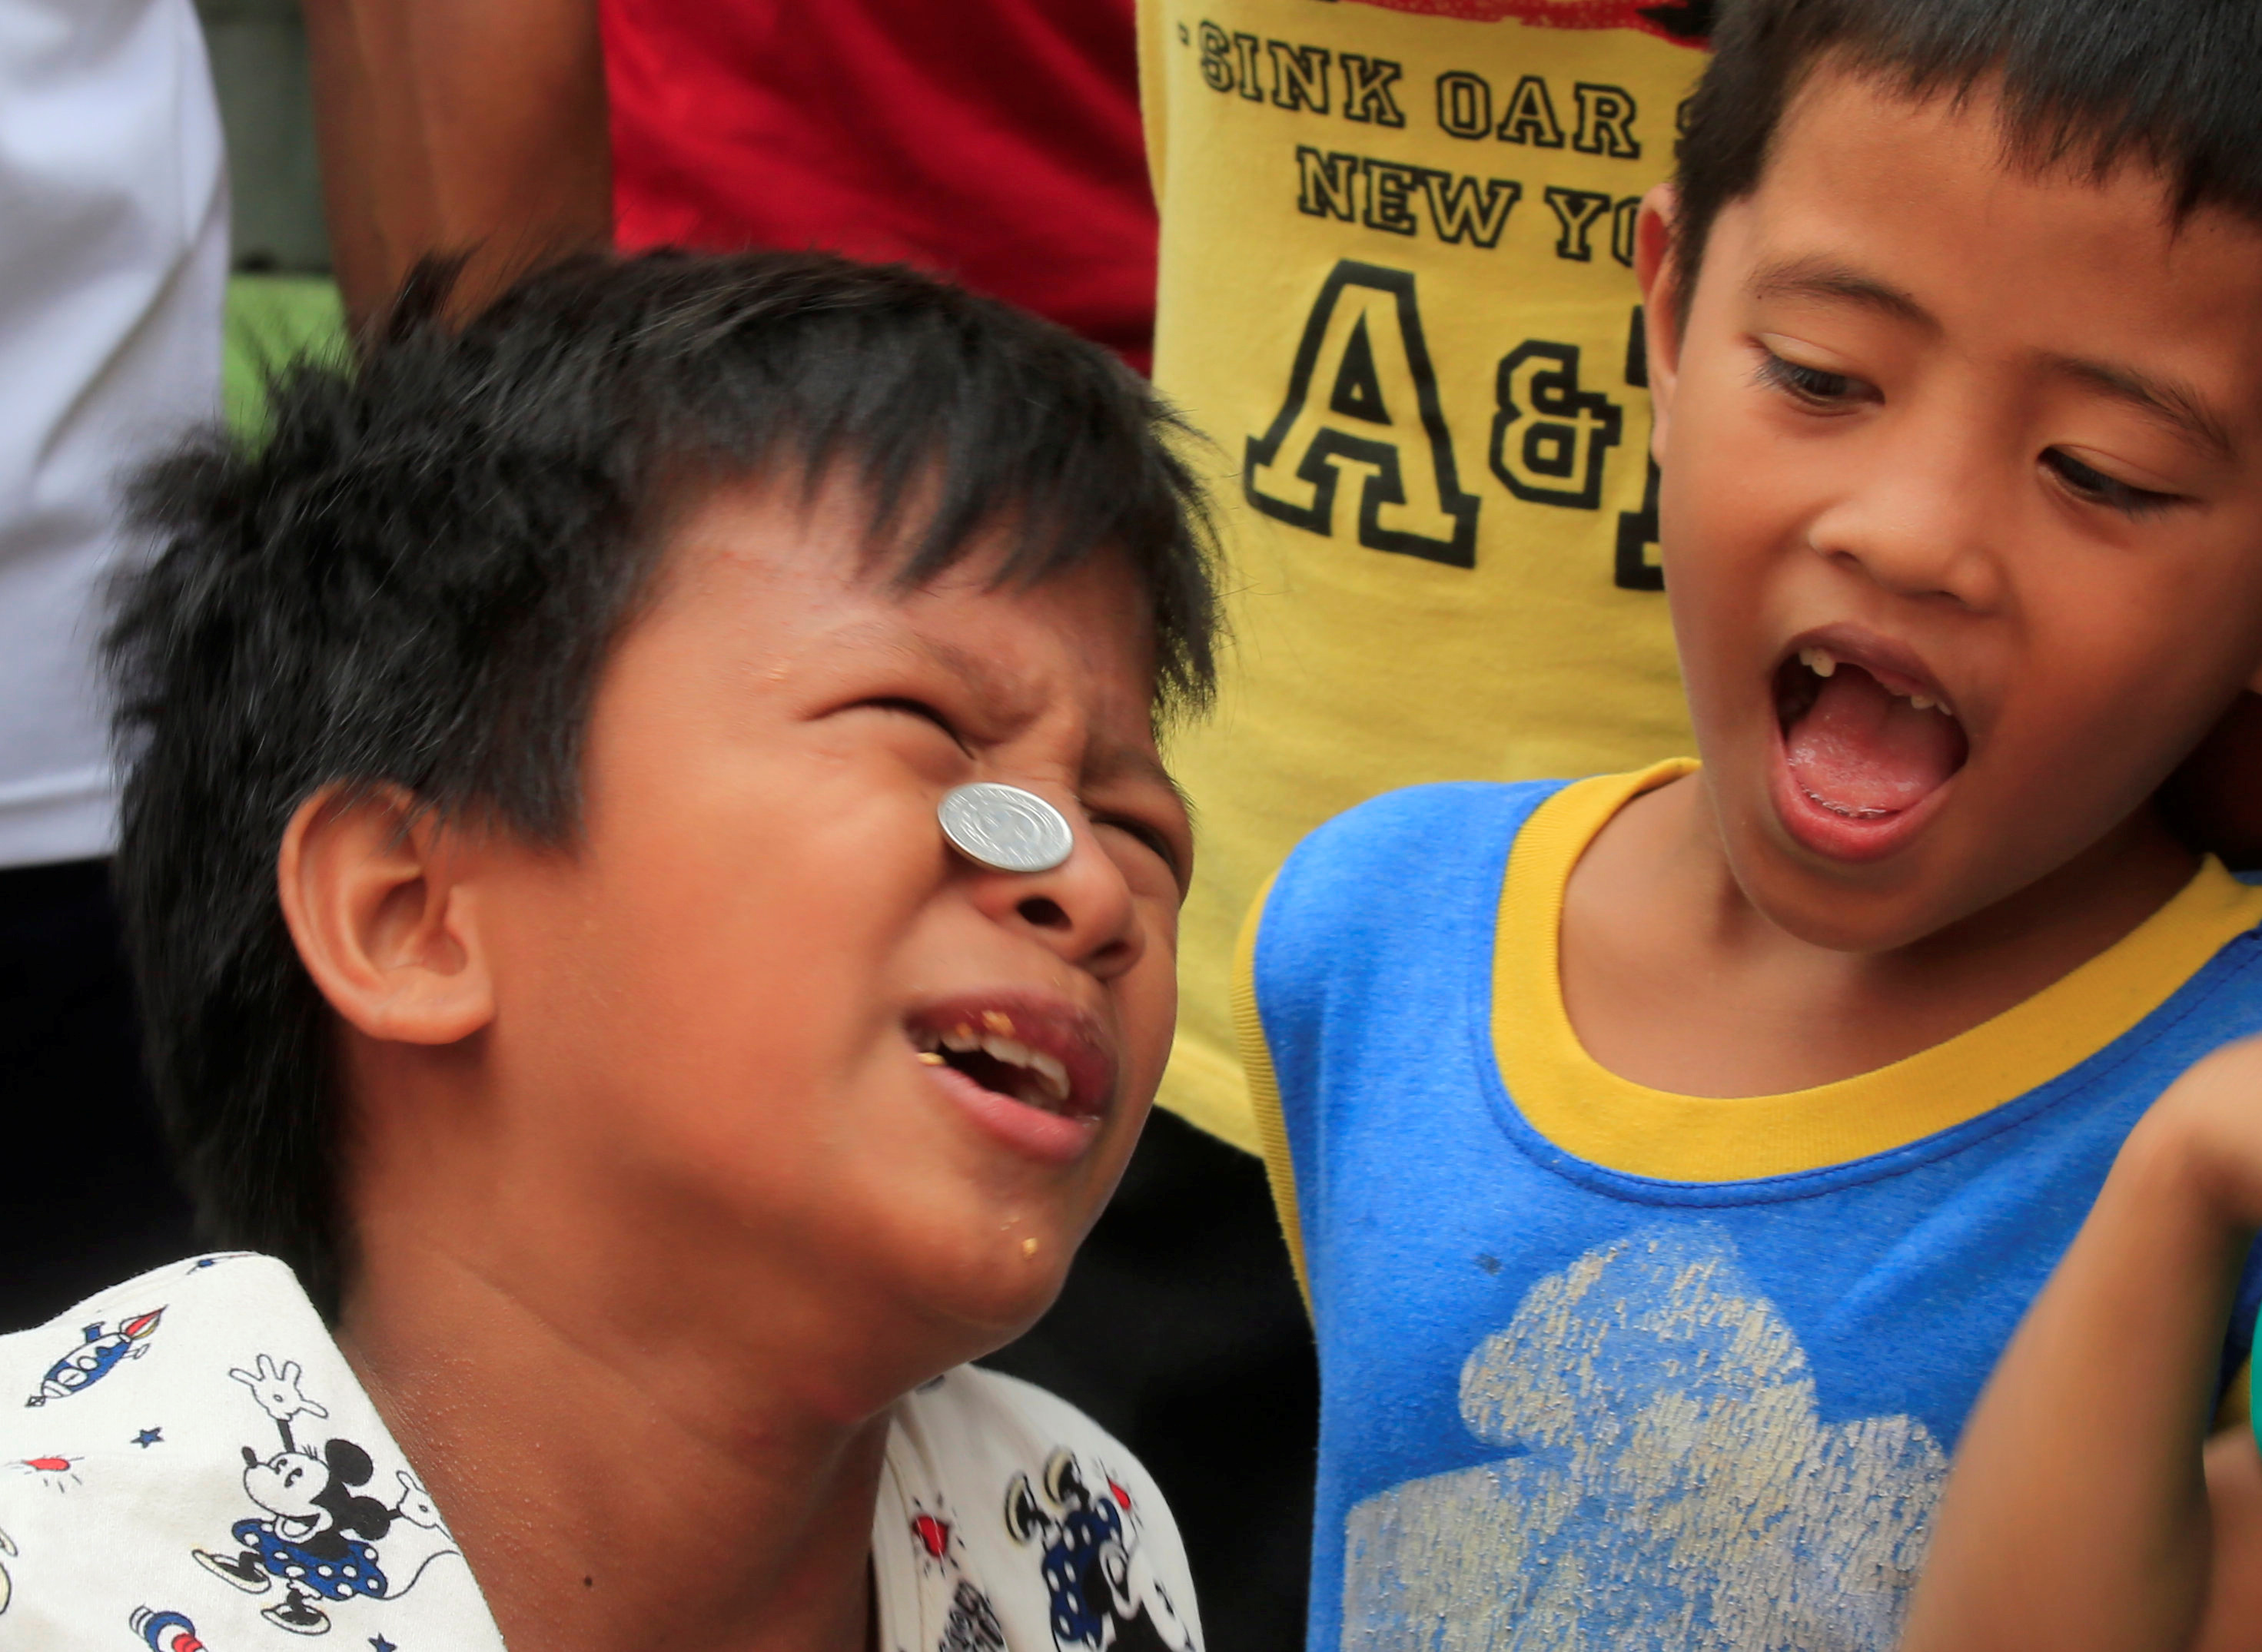 أحد الأطفال يحمل العملات المعدنية على وجهه لجلب الرزق خلال المهرجان